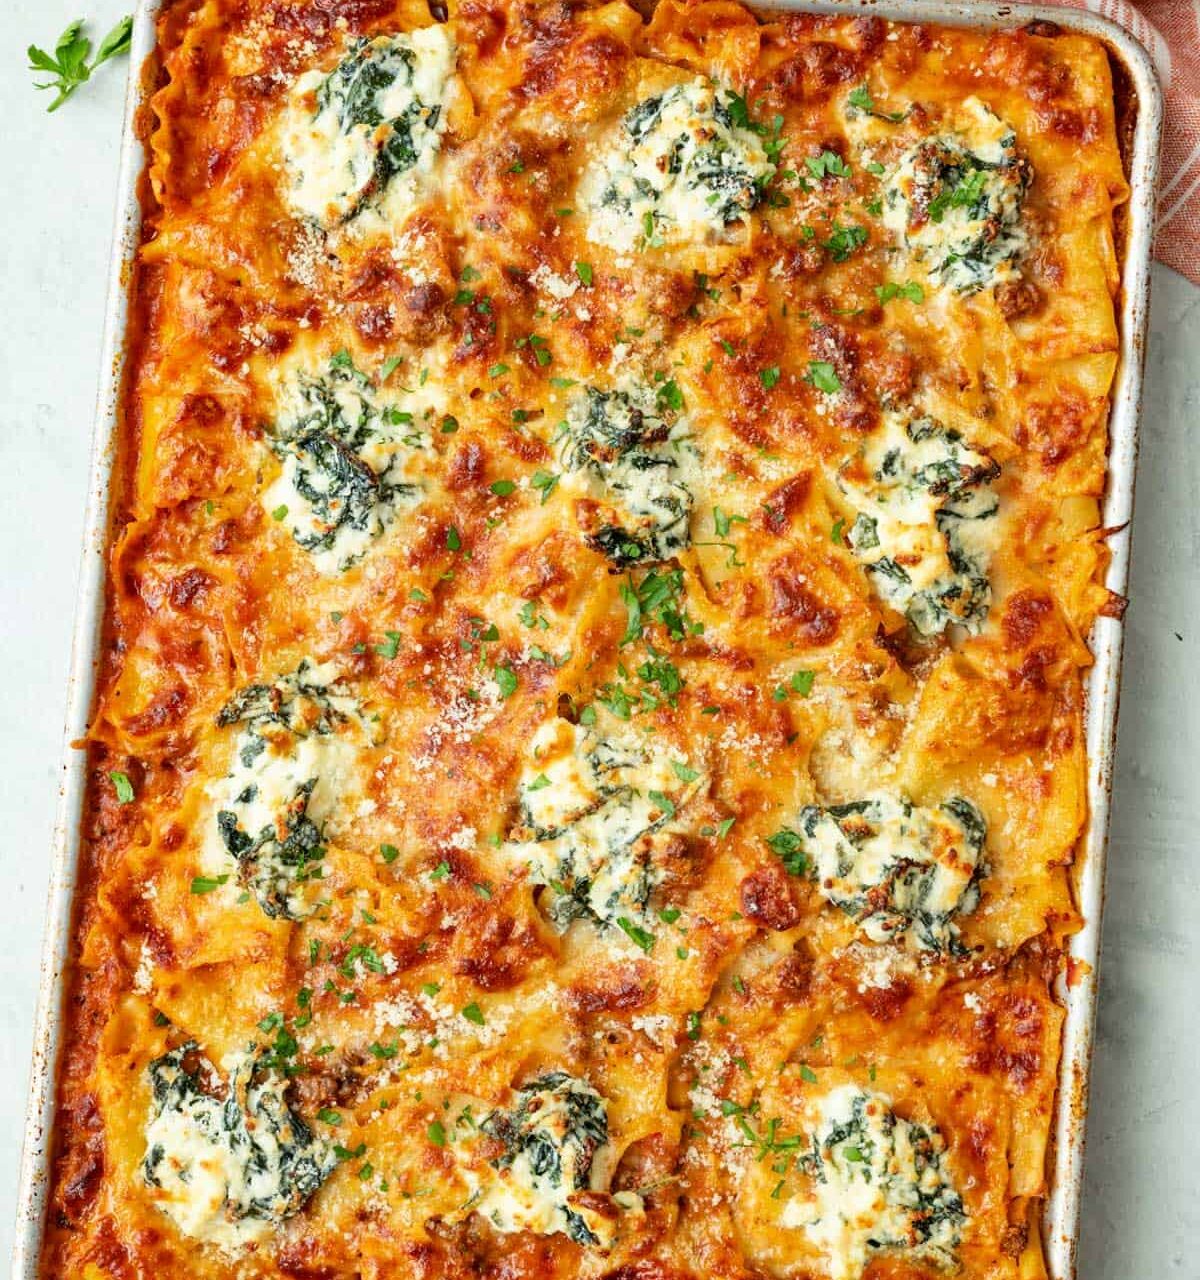 Sheet pan lasagna